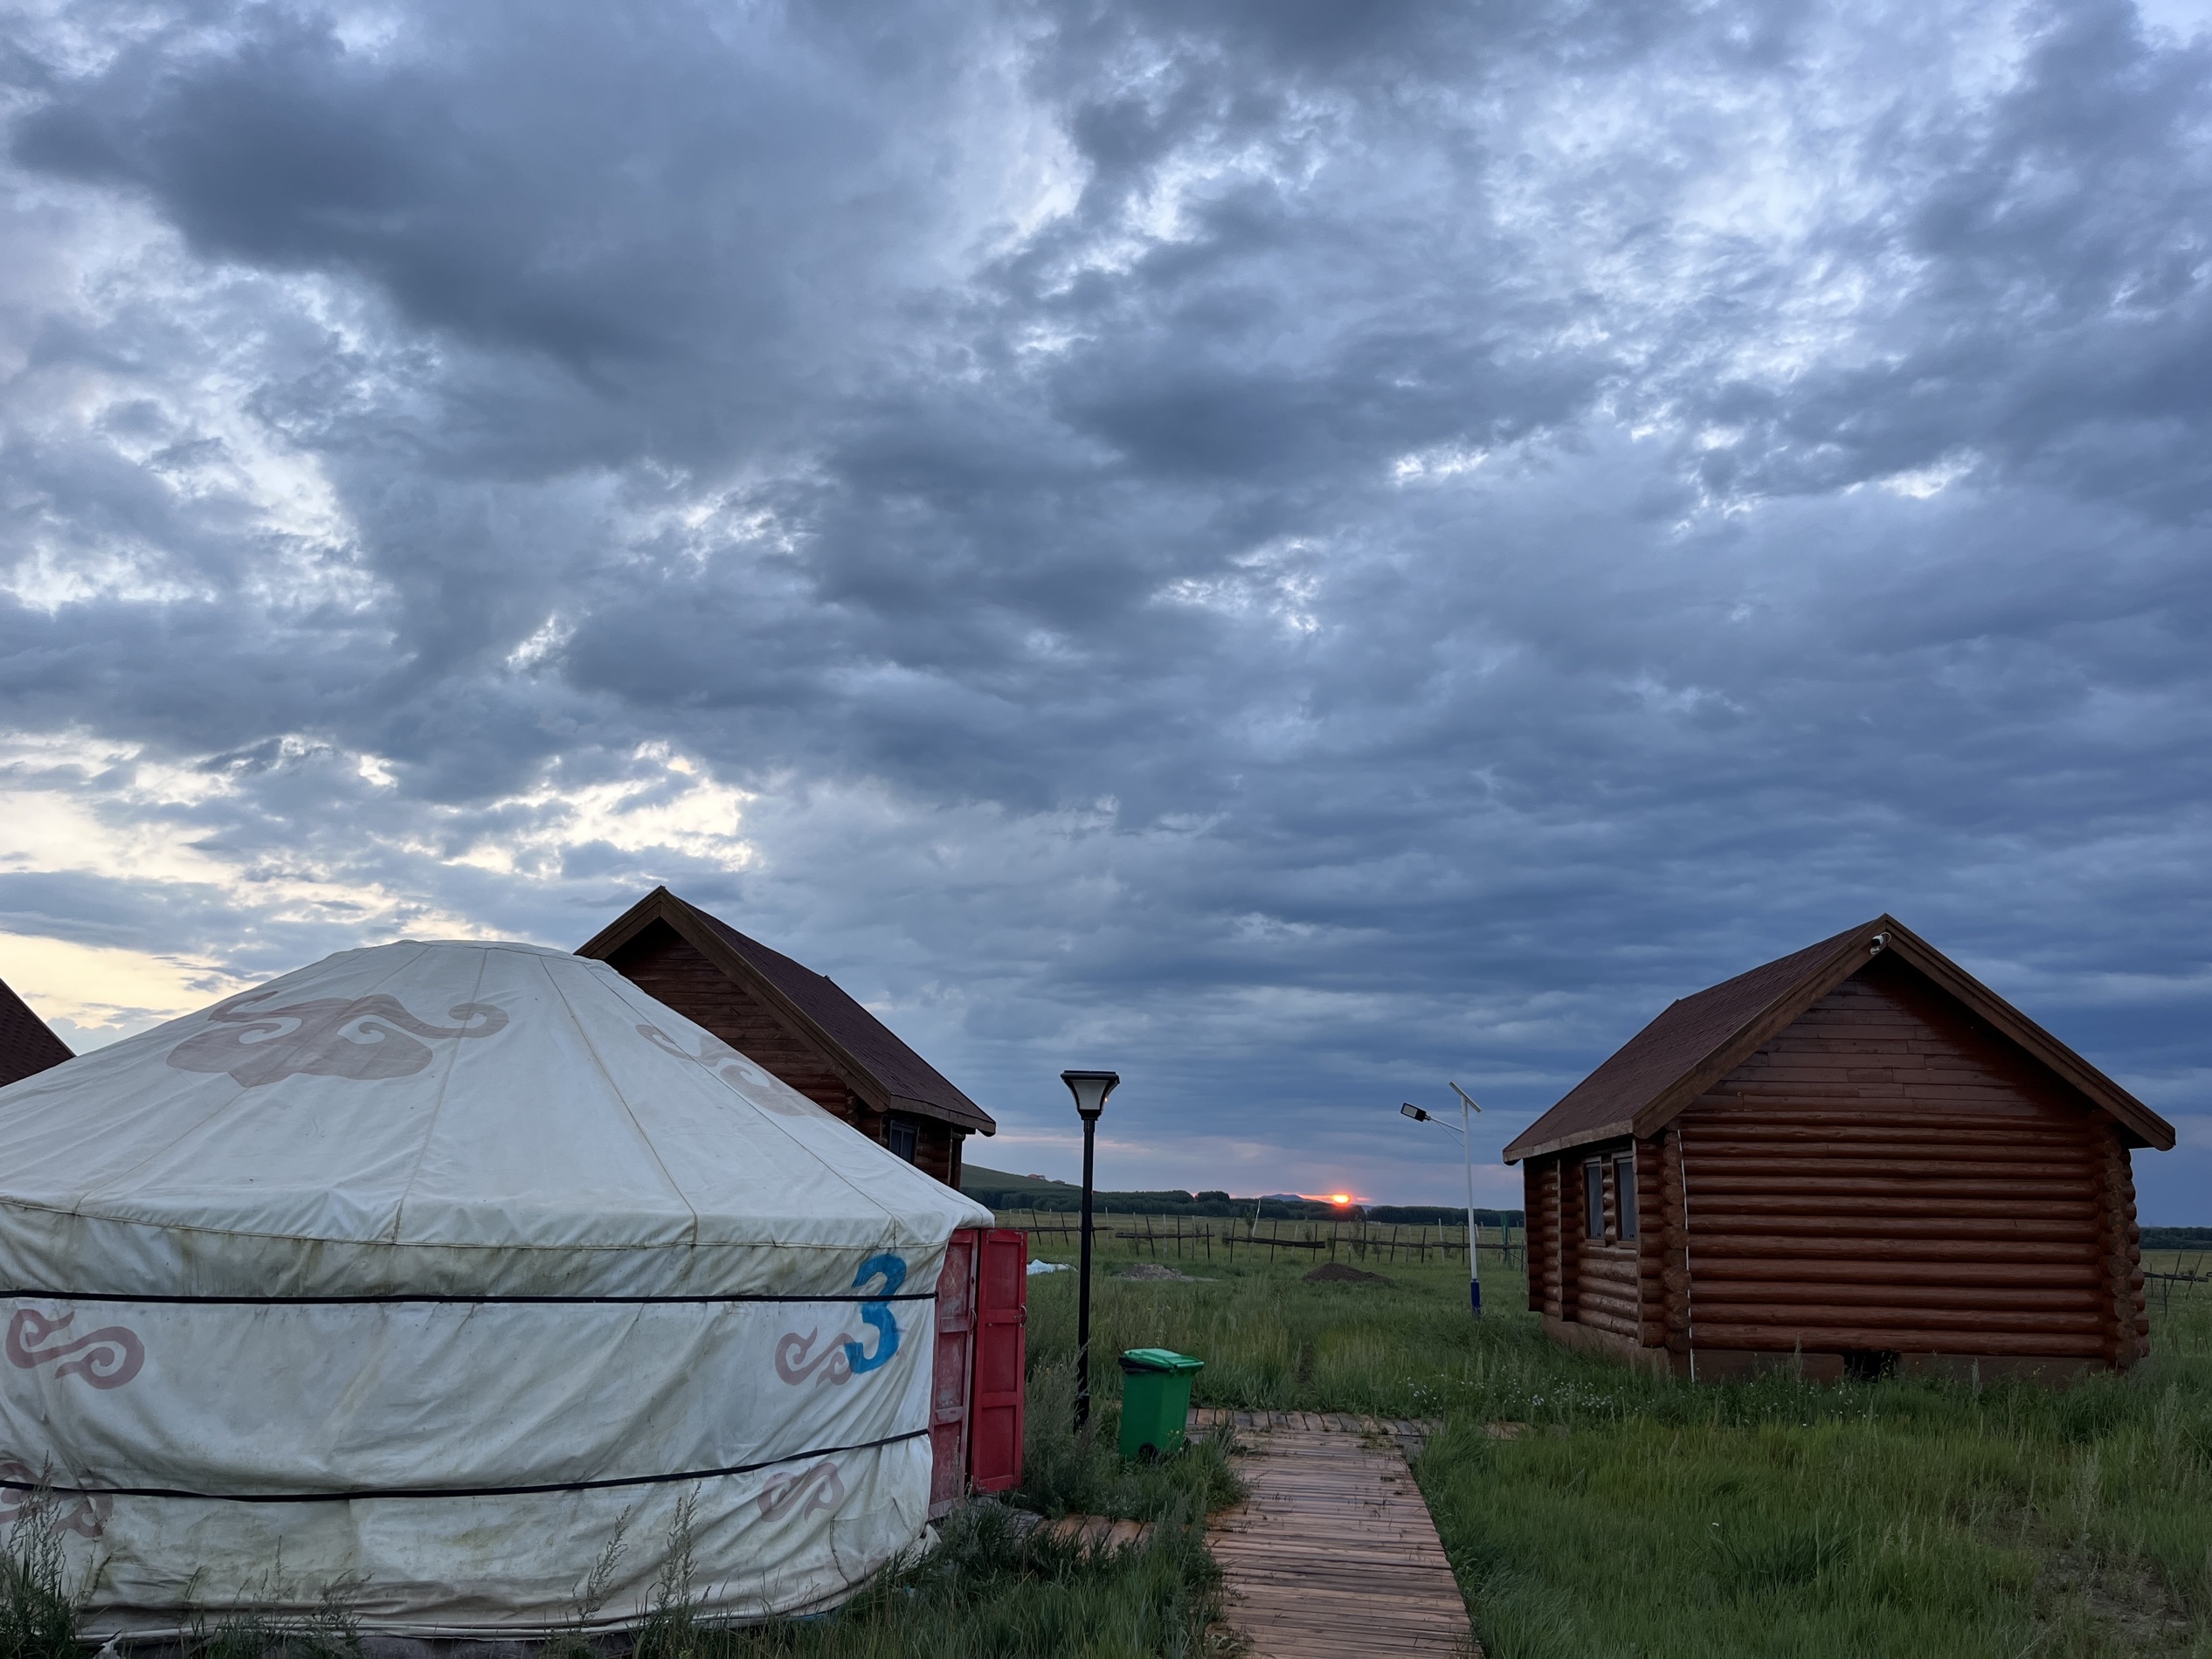 非常好的蒙古包体验，来草原一定要住一次蒙古包啊。小孩子们太开心了。早期直接在房间旁看日出，孩子们去草